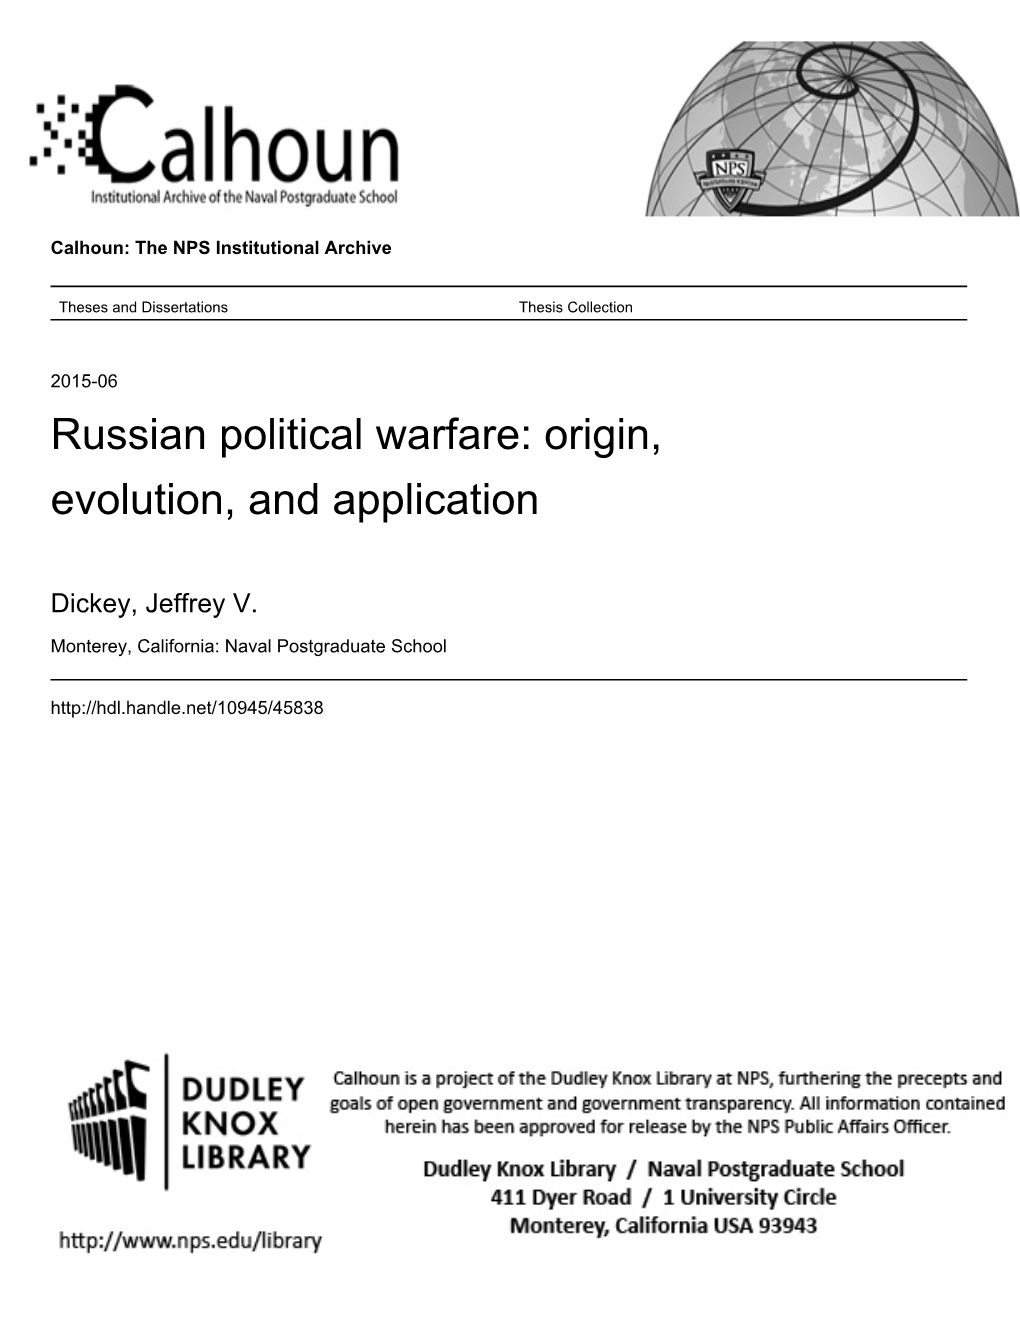 Russian Political Warfare: Origin, Evolution, and Application